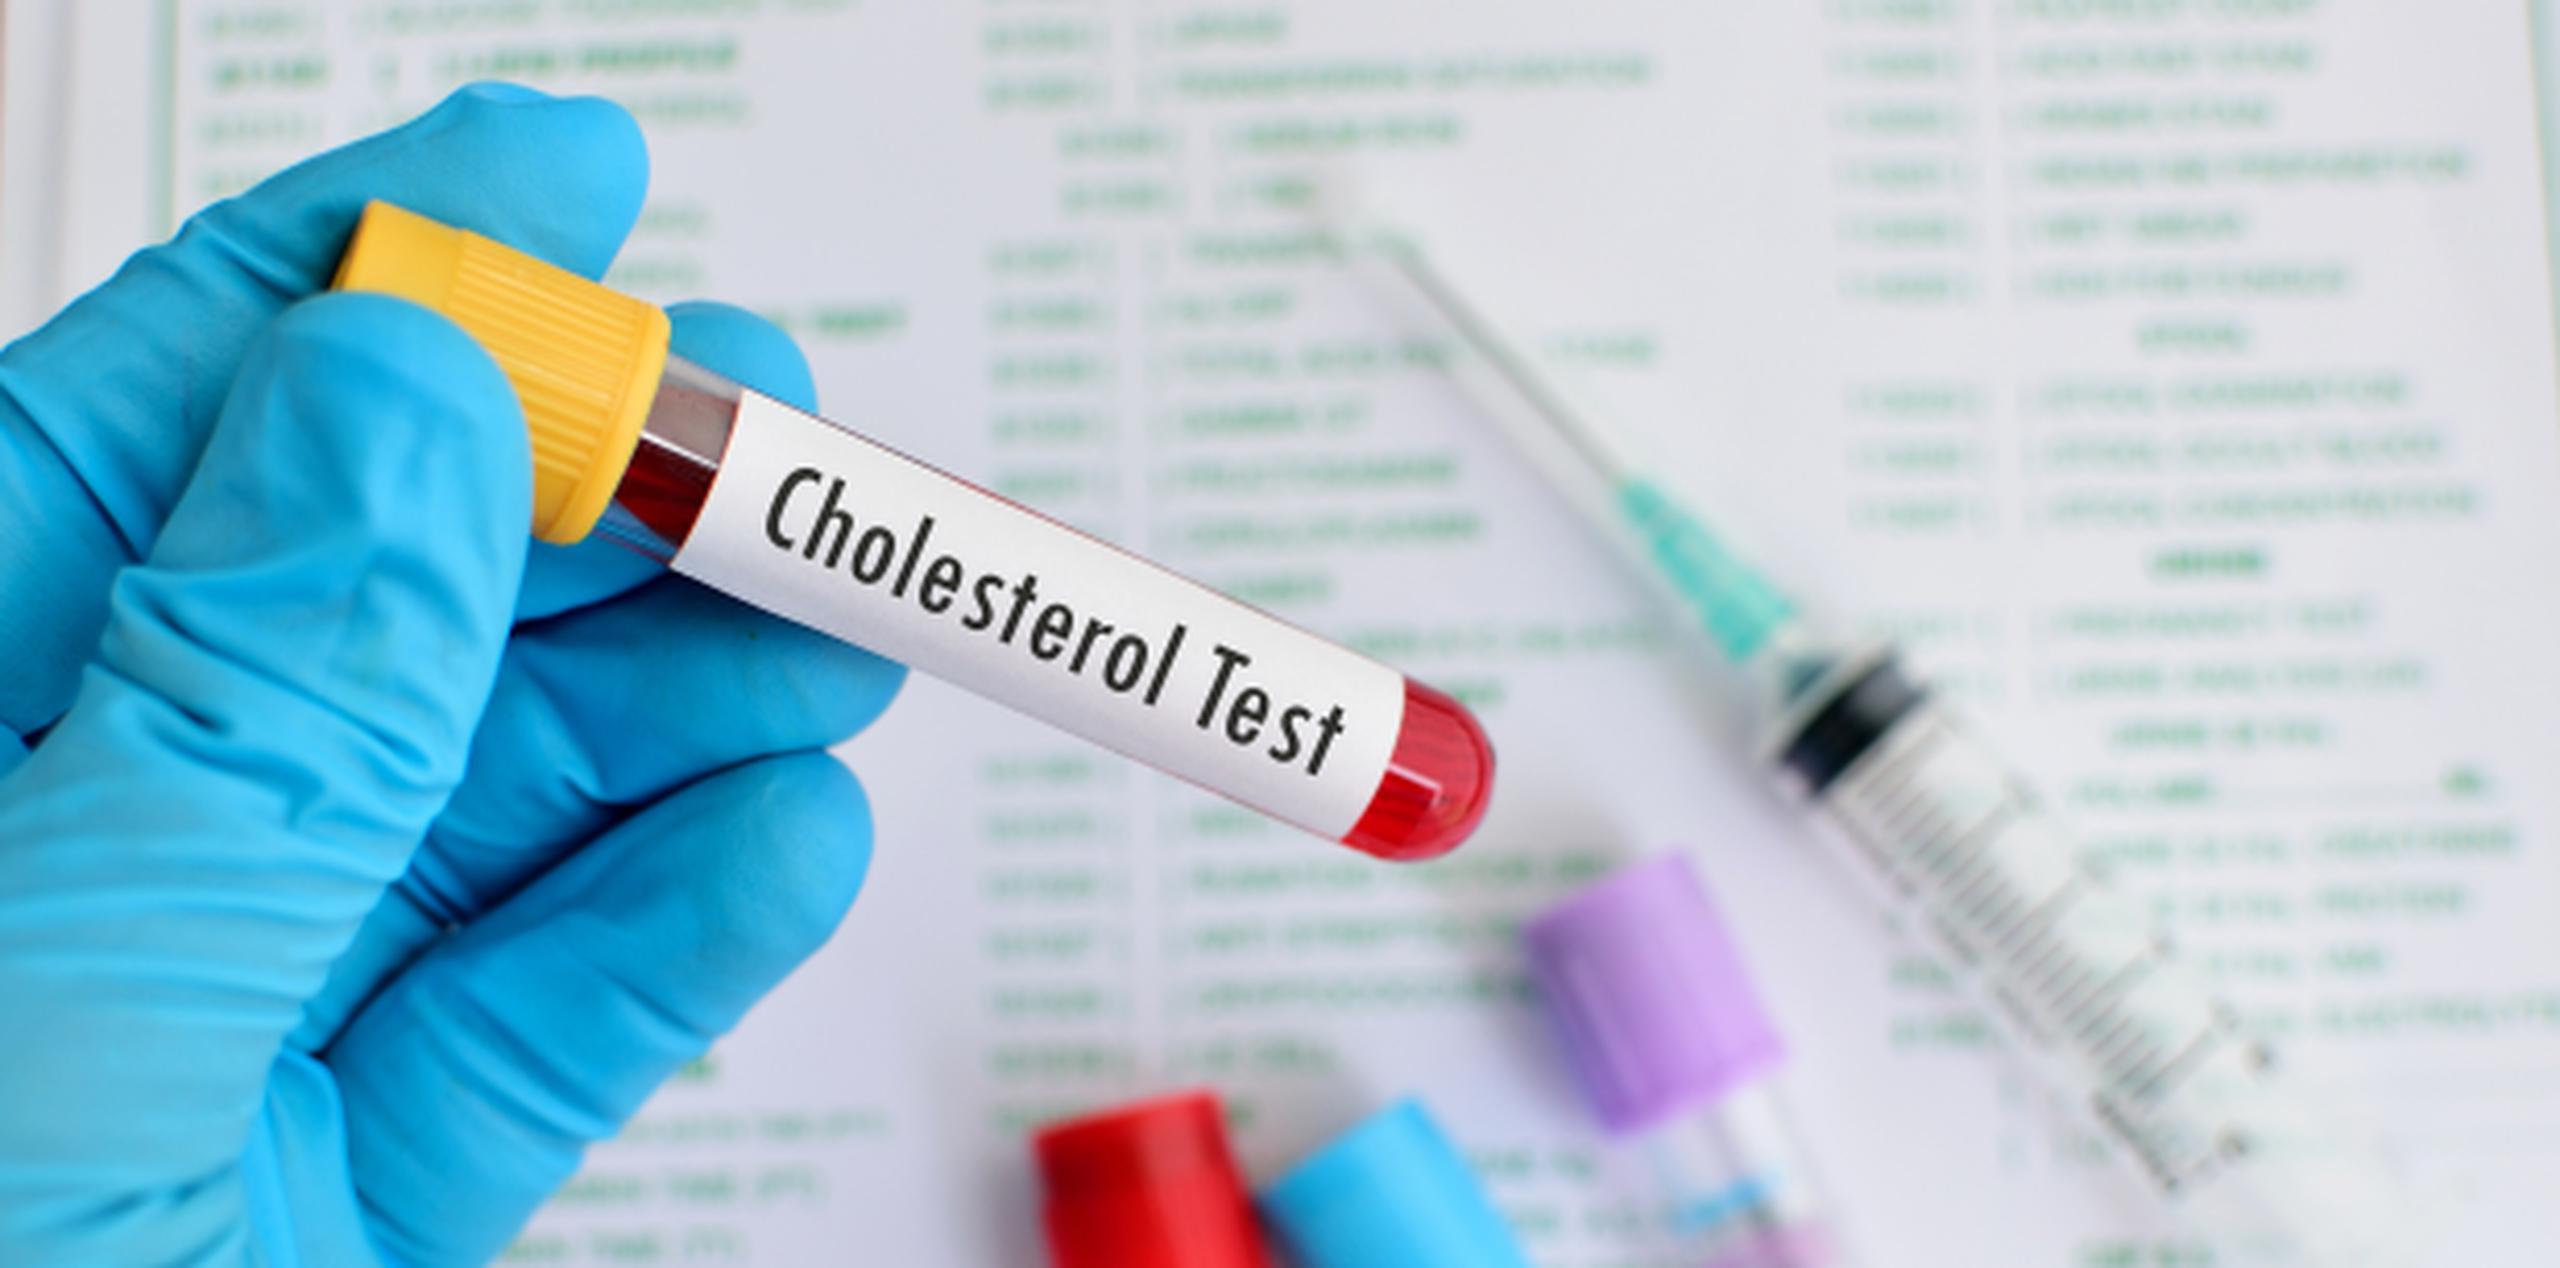 Unas 2.6 millones de personas mueren cada año por problemas derivados del colesterol, principalmente afecciones cardíacas. (Shutterstock)